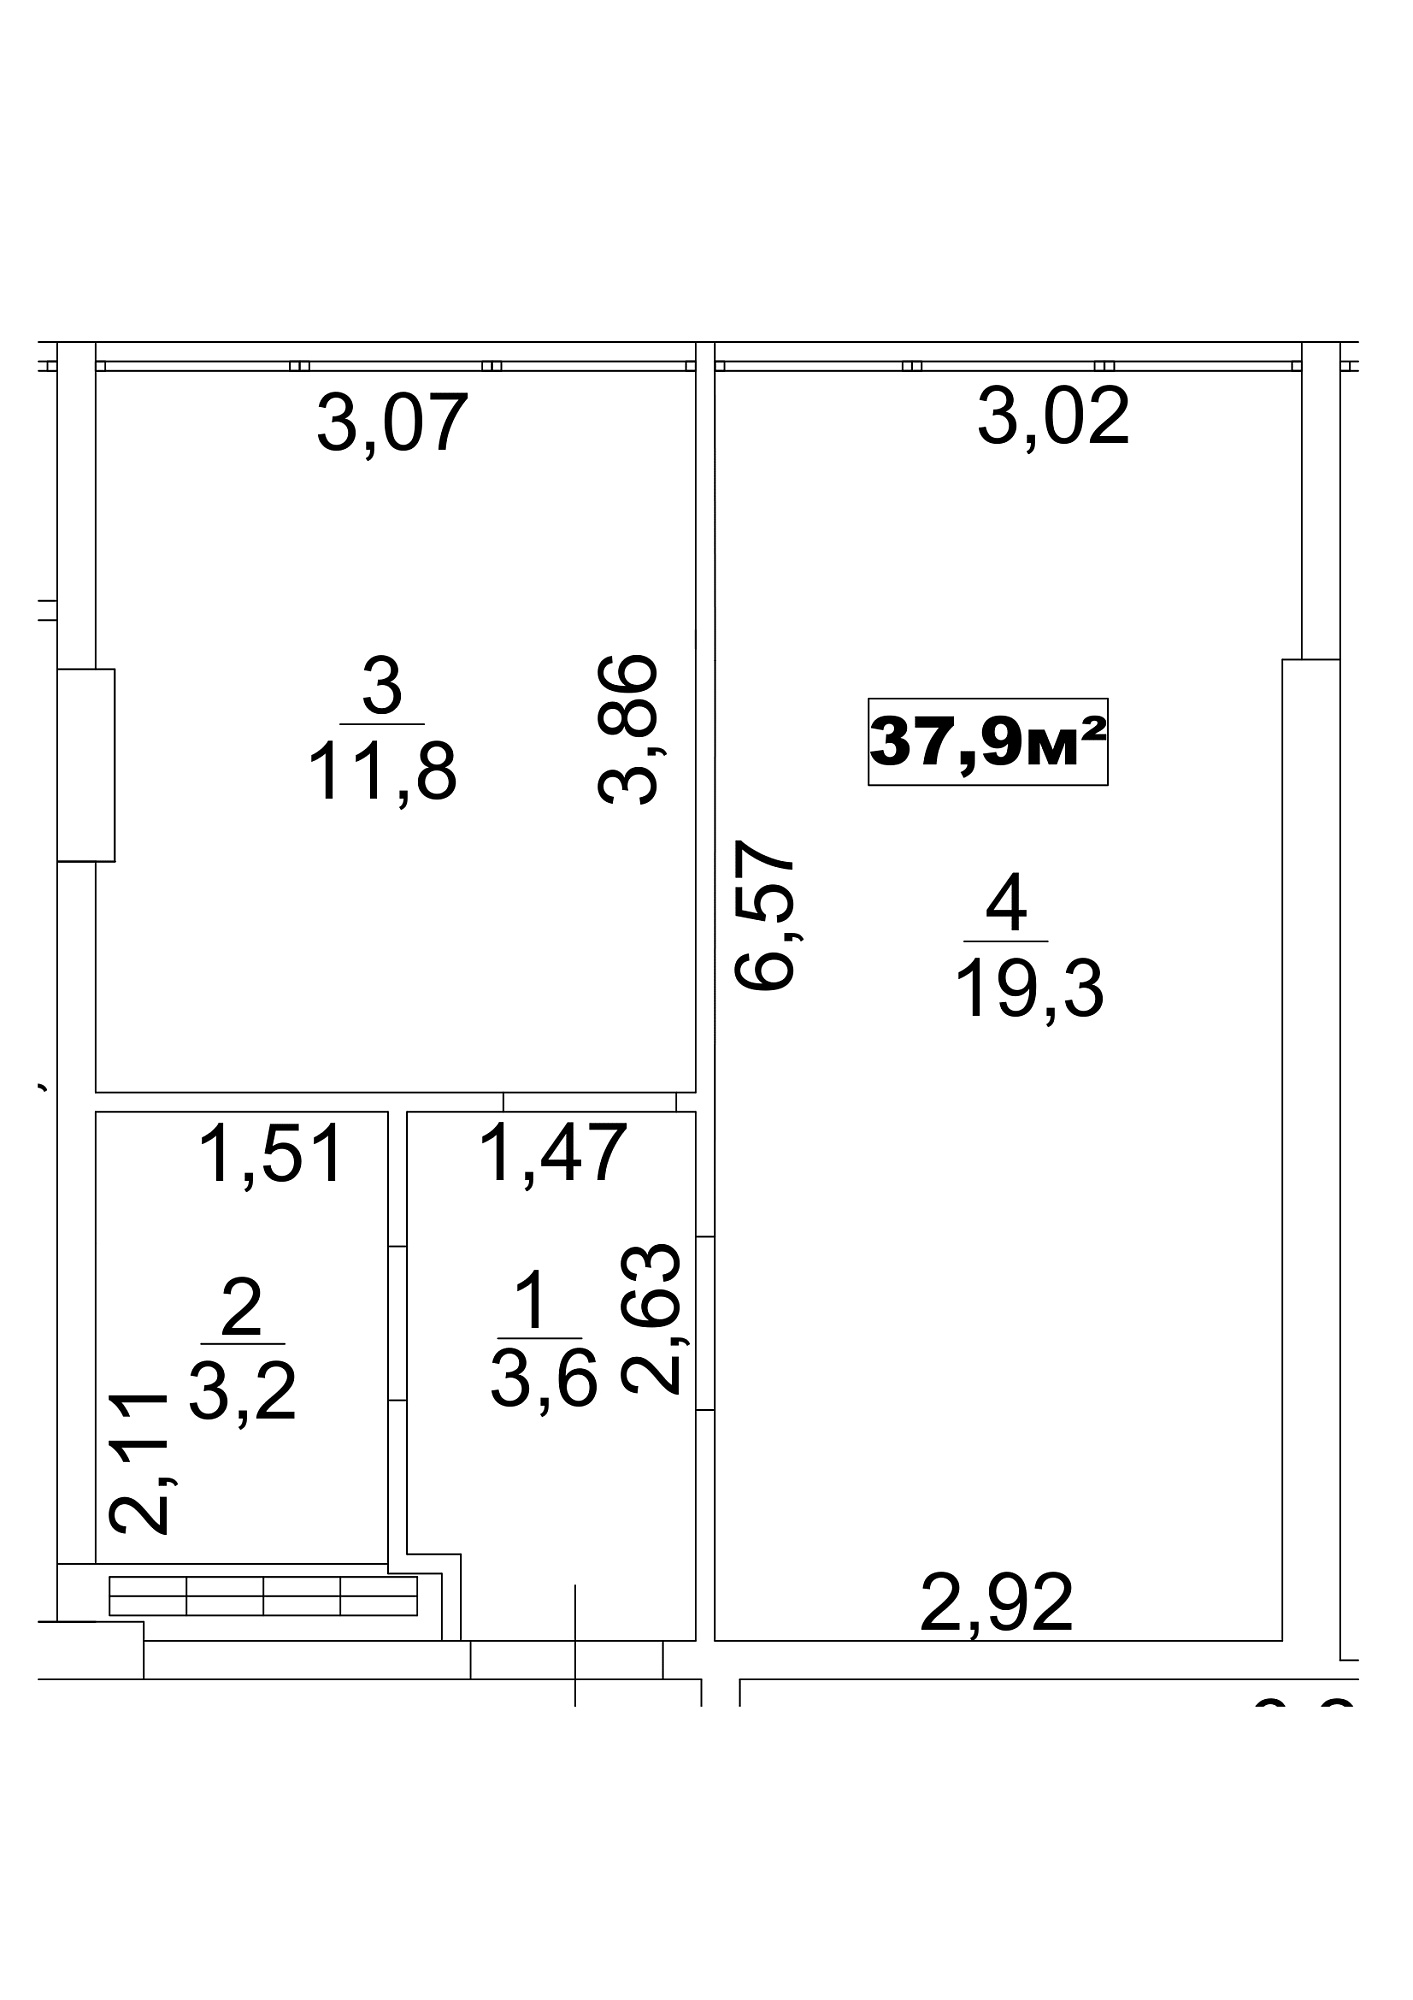 Планировка 1-к квартира площей 37.9м2, AB-13-05/0039а.